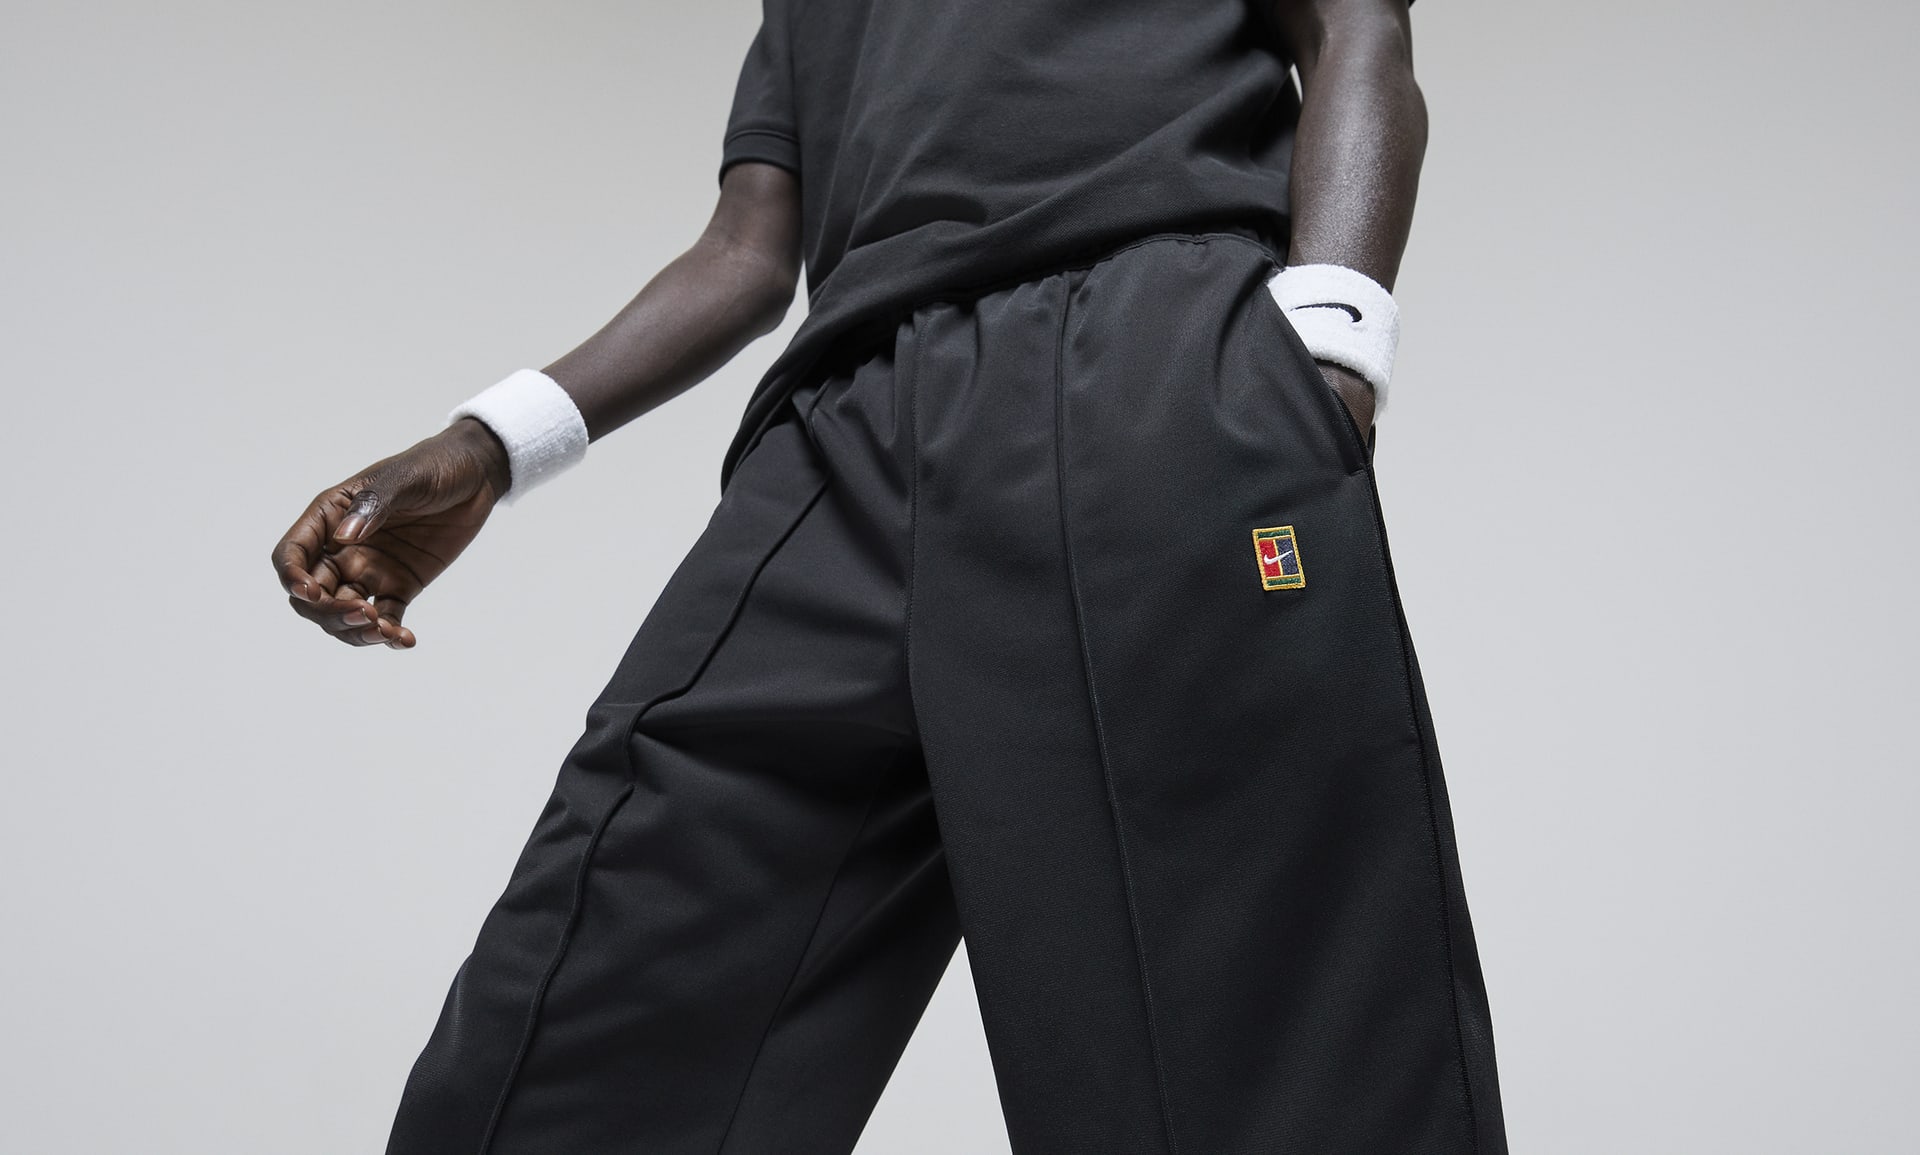 Nike M Nkct Herıtage Suıt Pant Erkek Siyah Eşofman Altı - DC0621-010  İndirimli Fiyatlarıyla